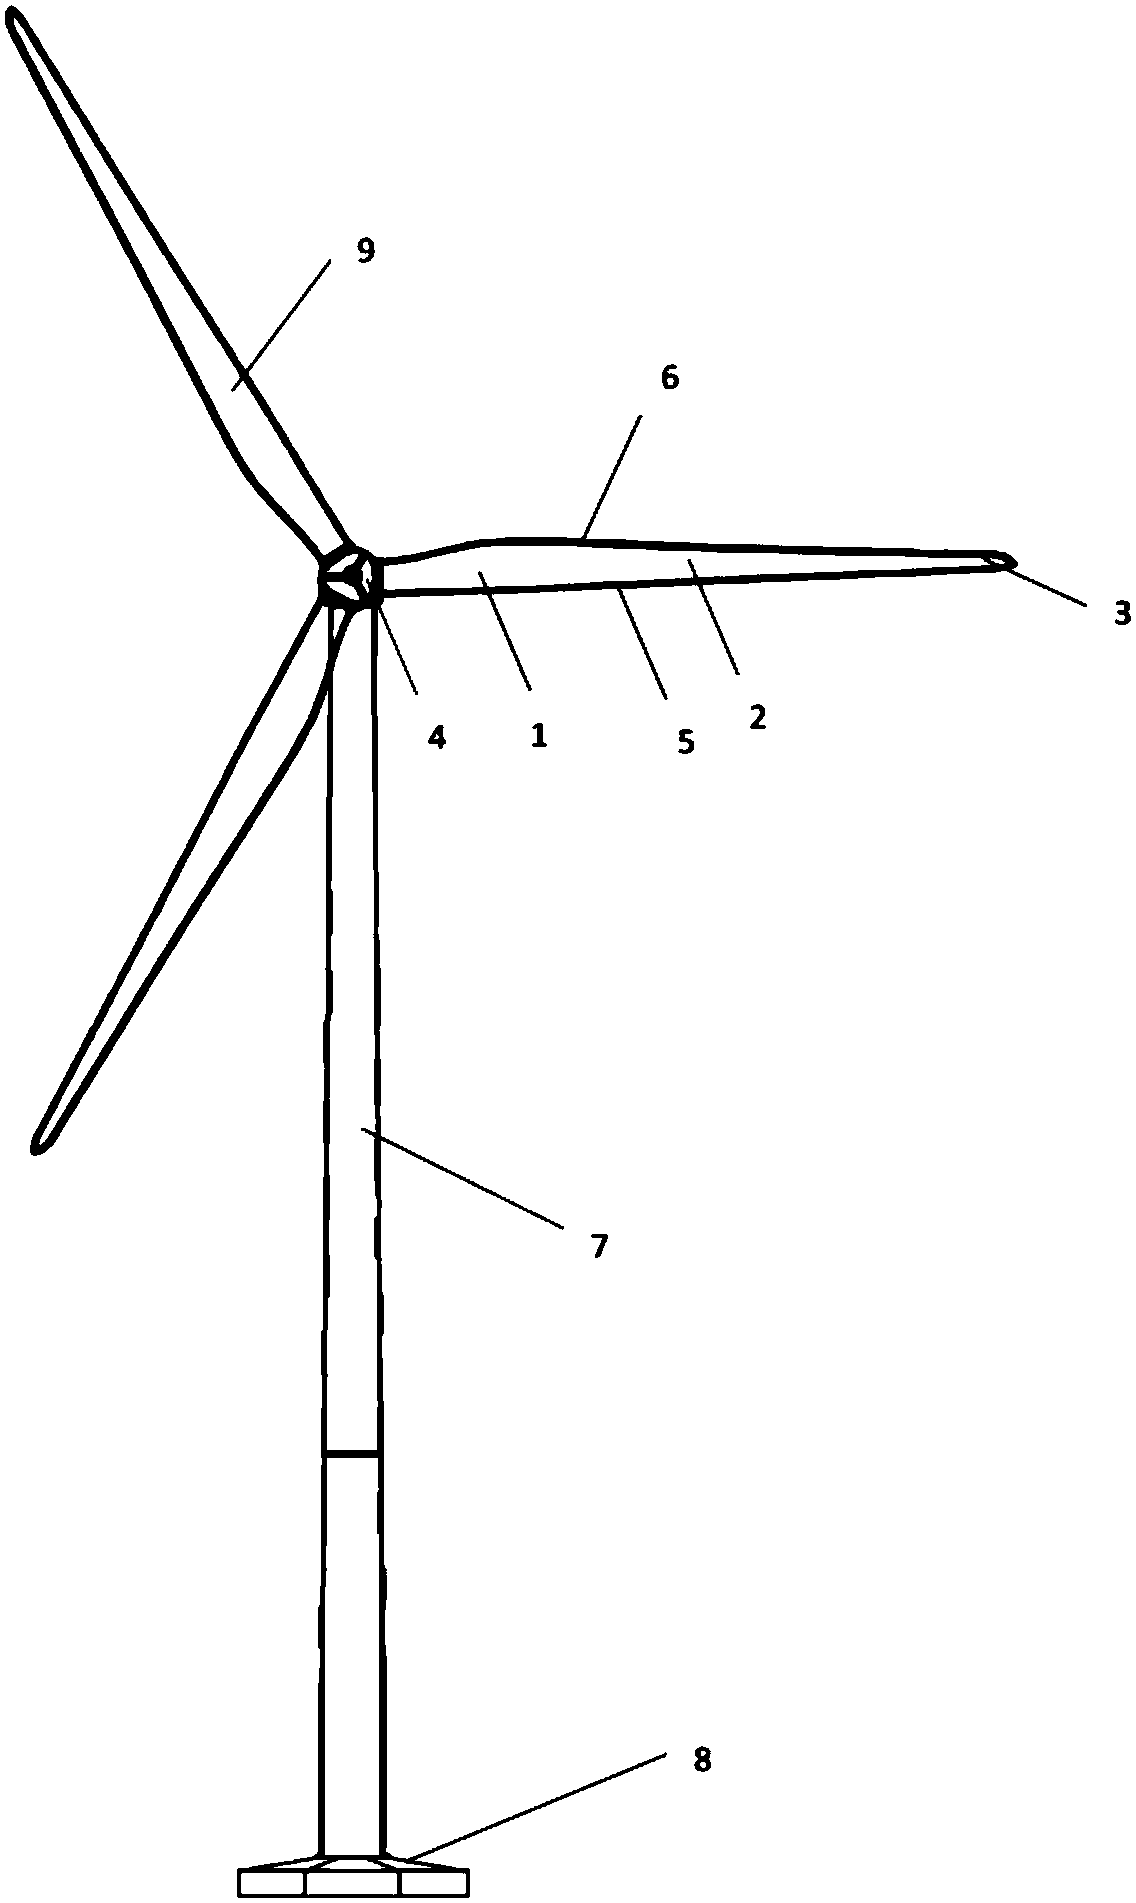 Eddy generator, wind turbine blade with eddy generator and installation method of eddy generator